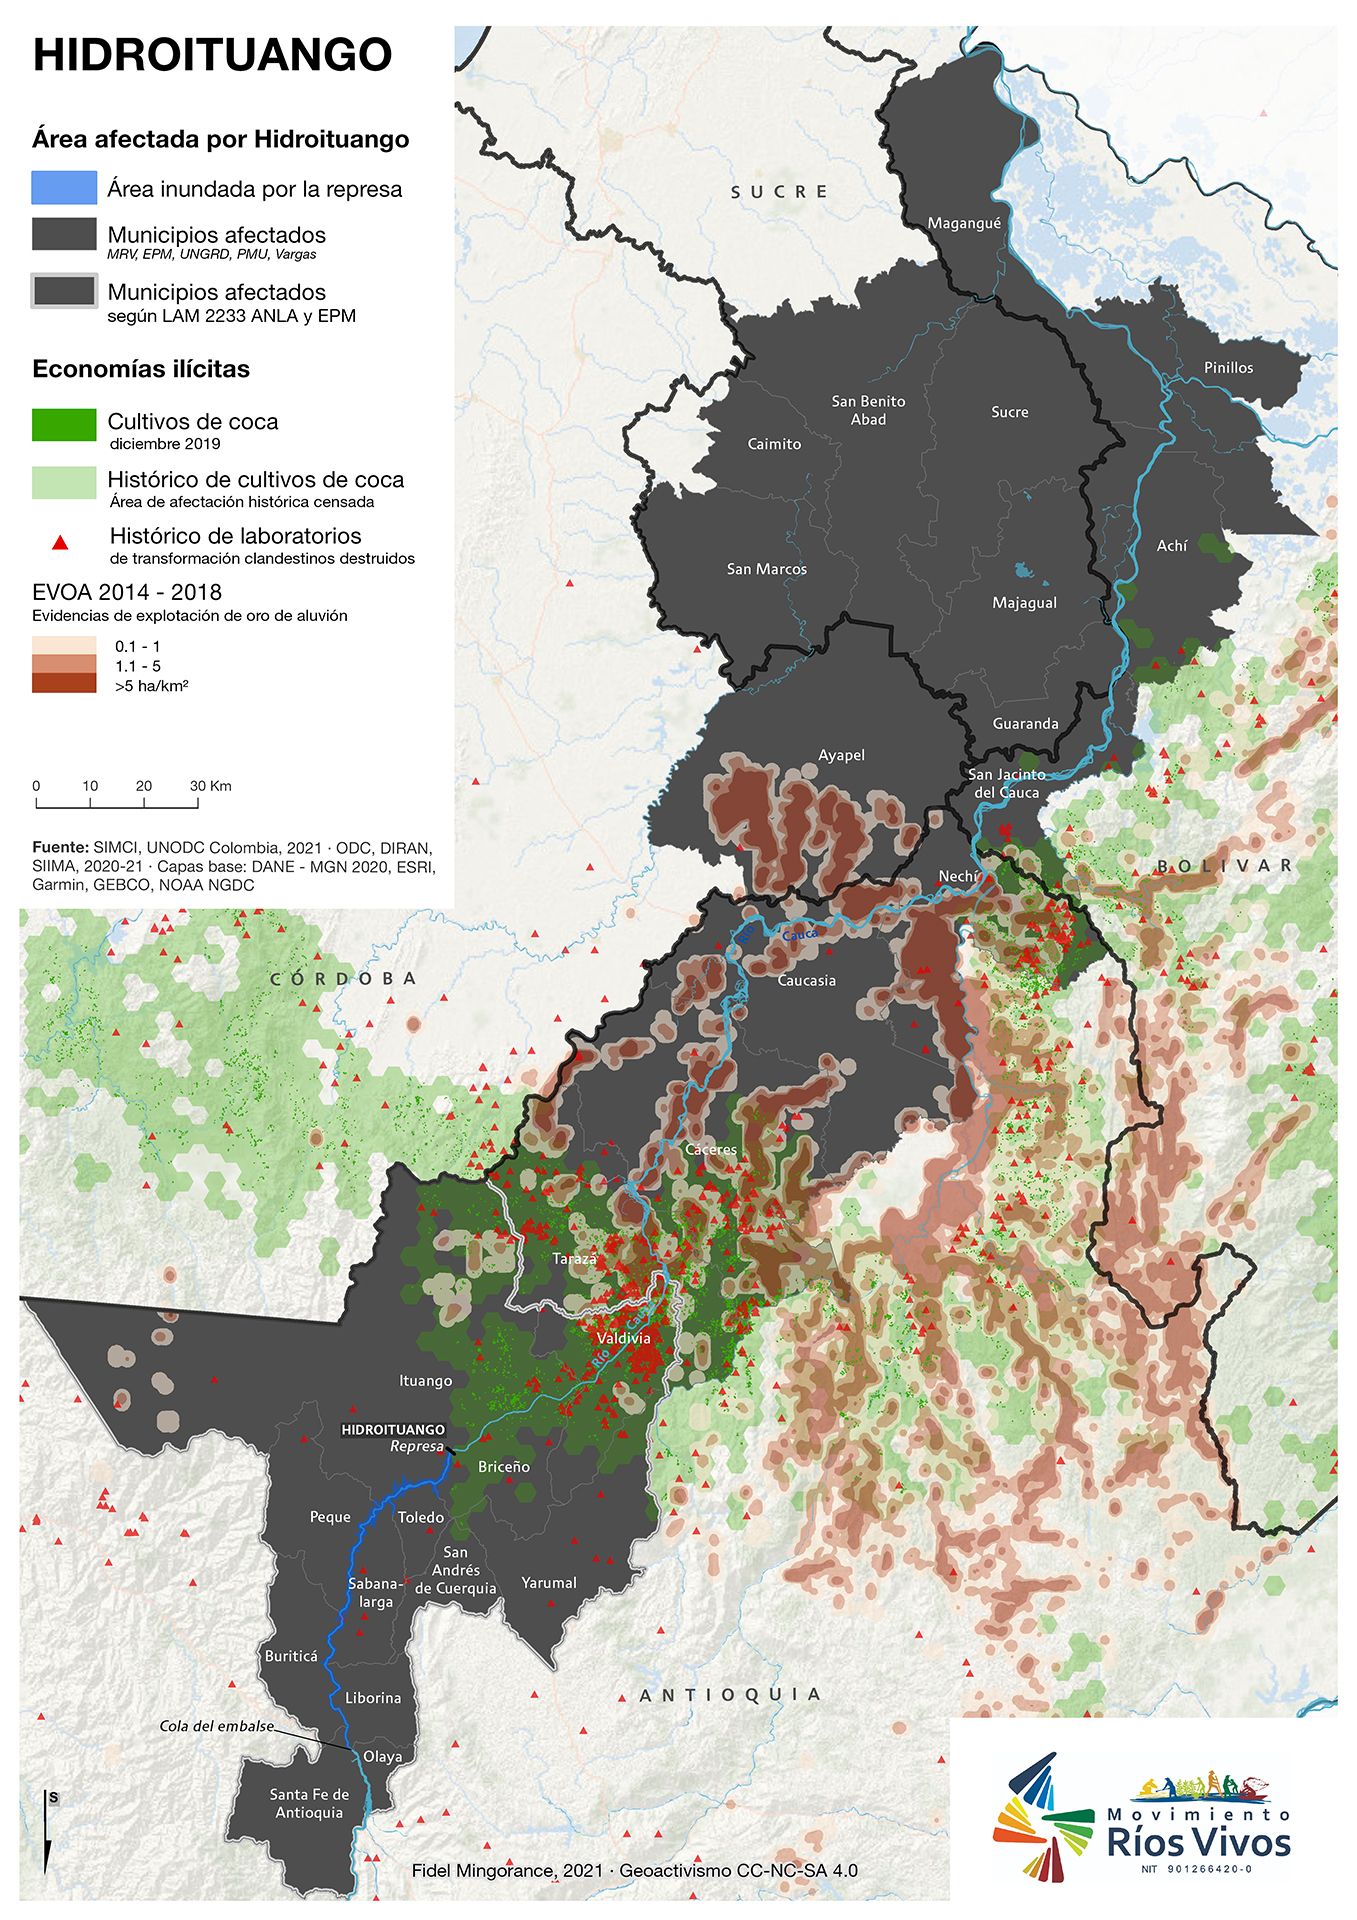 Economías ilícitas en área afectada por Hidroituango (julio 2021)